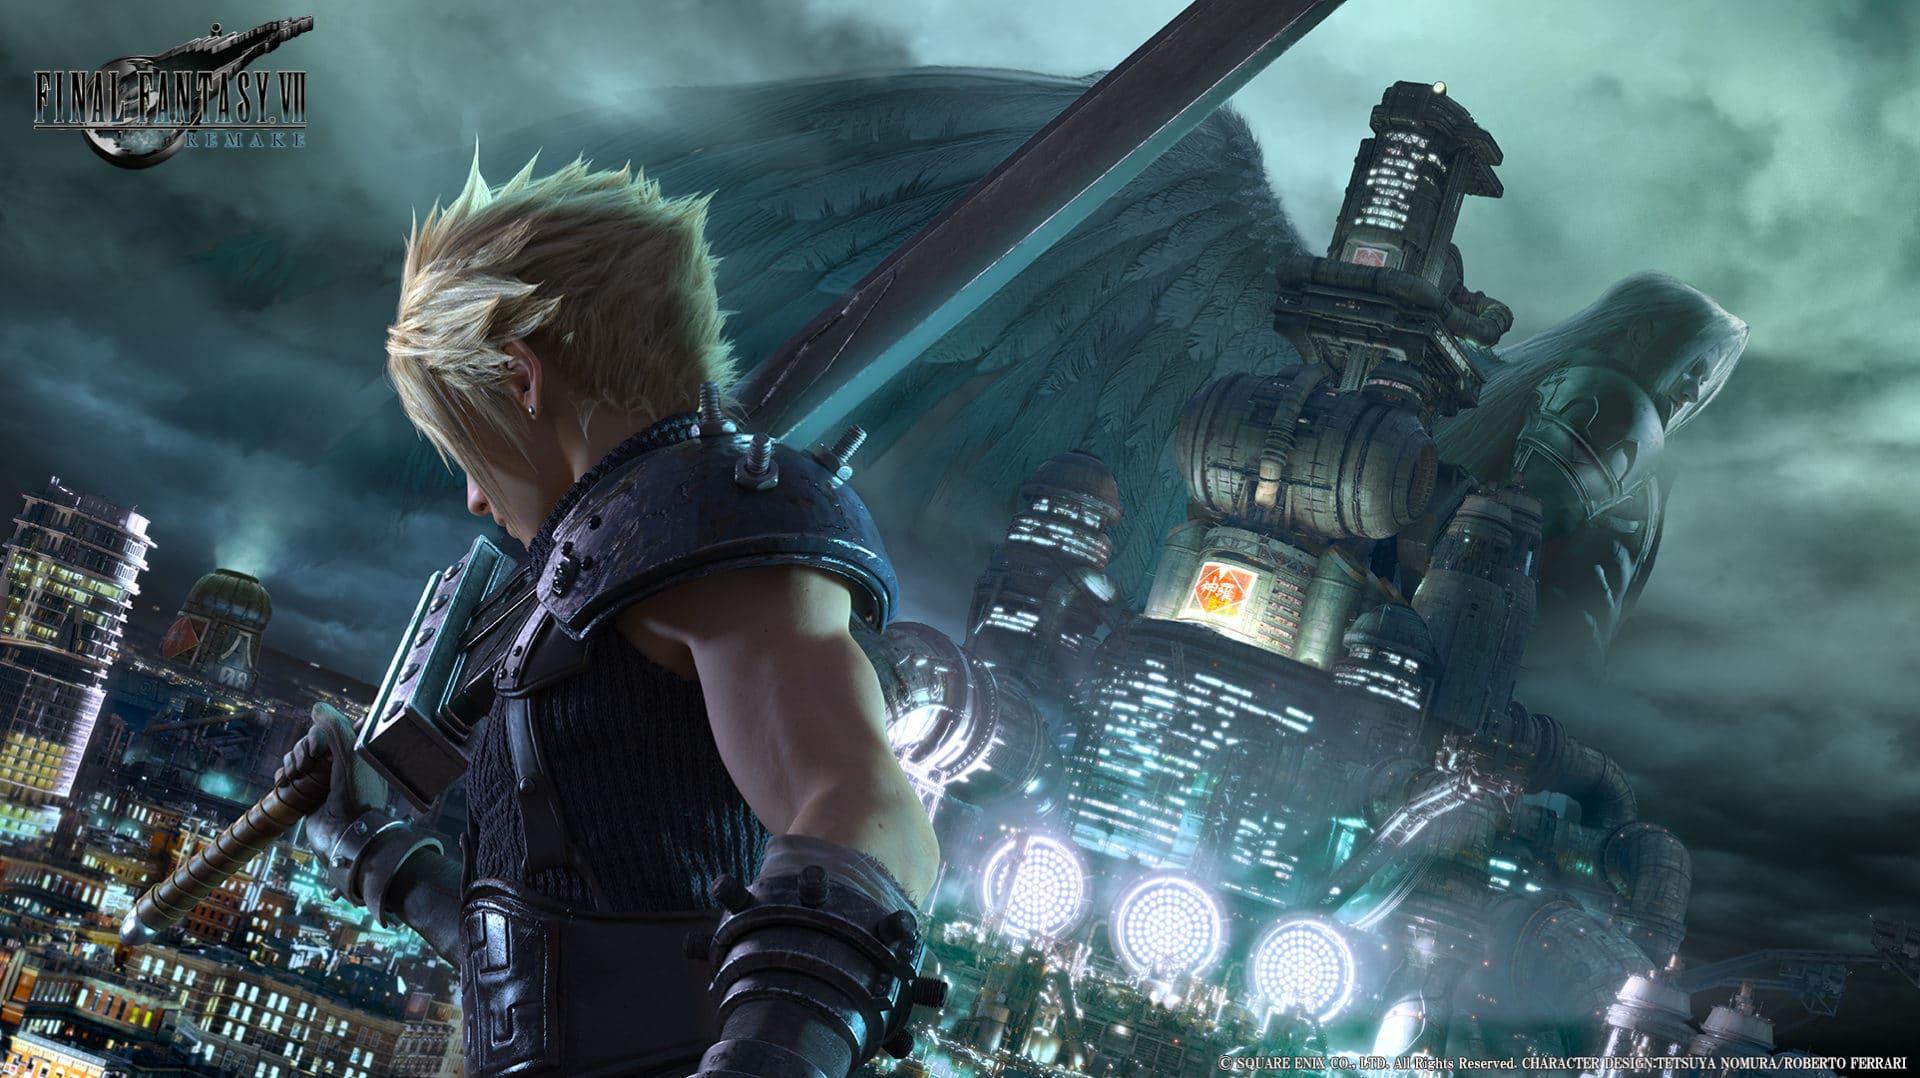 Conteúdo inédito de Final Fantasy VII Remake será apresentado em celebração à franquia